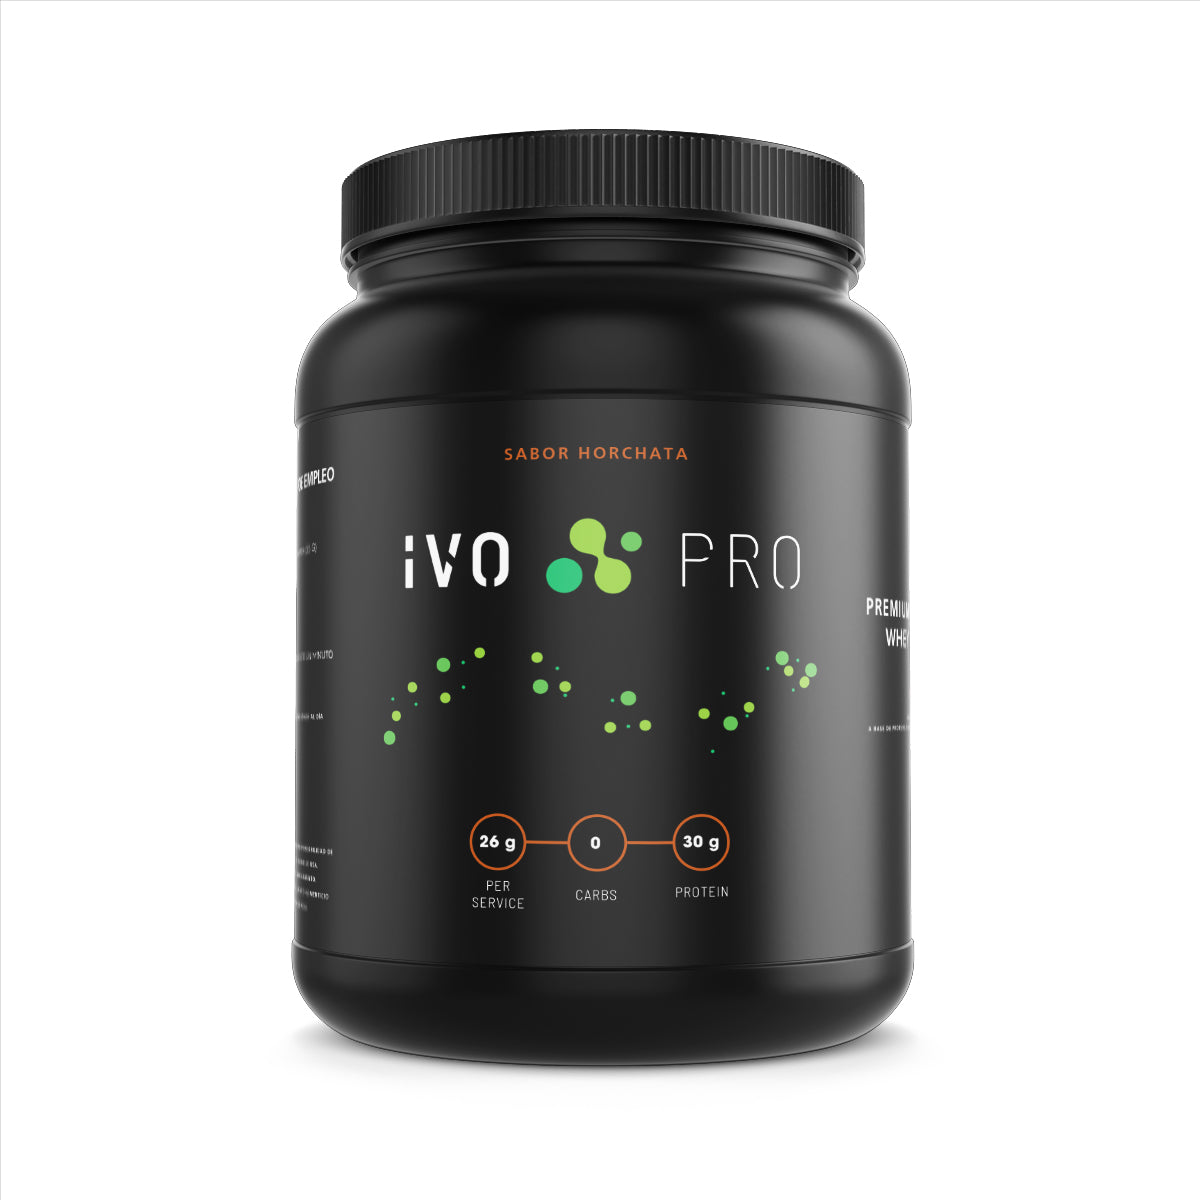 IVO PRO Proteína Premium Sabor Horchata de Suero de Leche | 26g Proteína | 0g Carbs | Libre Lactosa | 33 Porciones